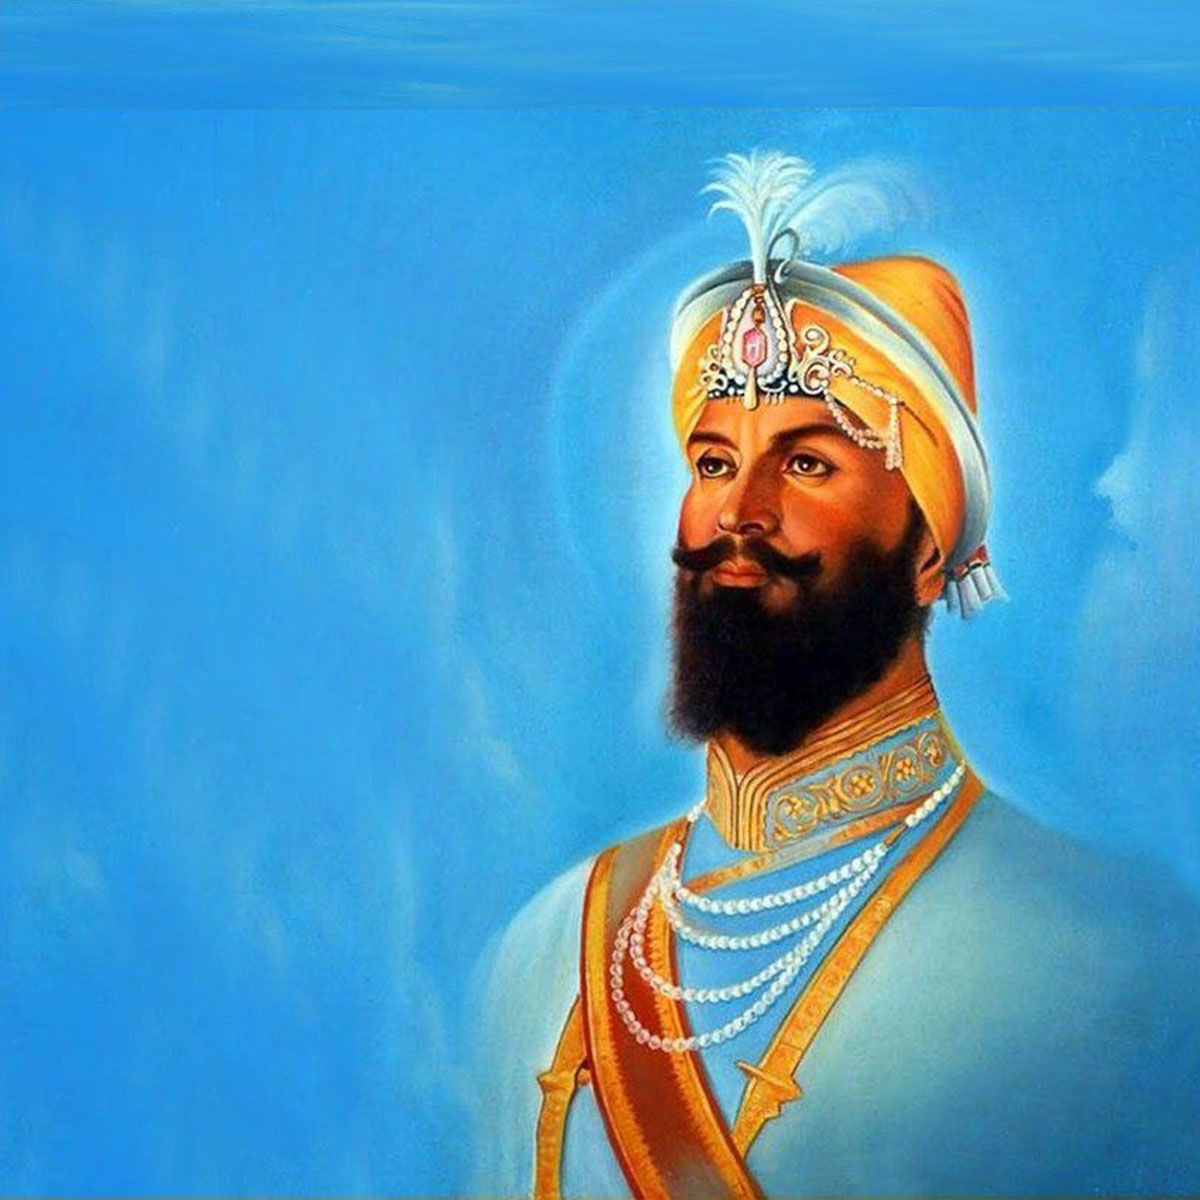 Guru Gobind Singh Ji